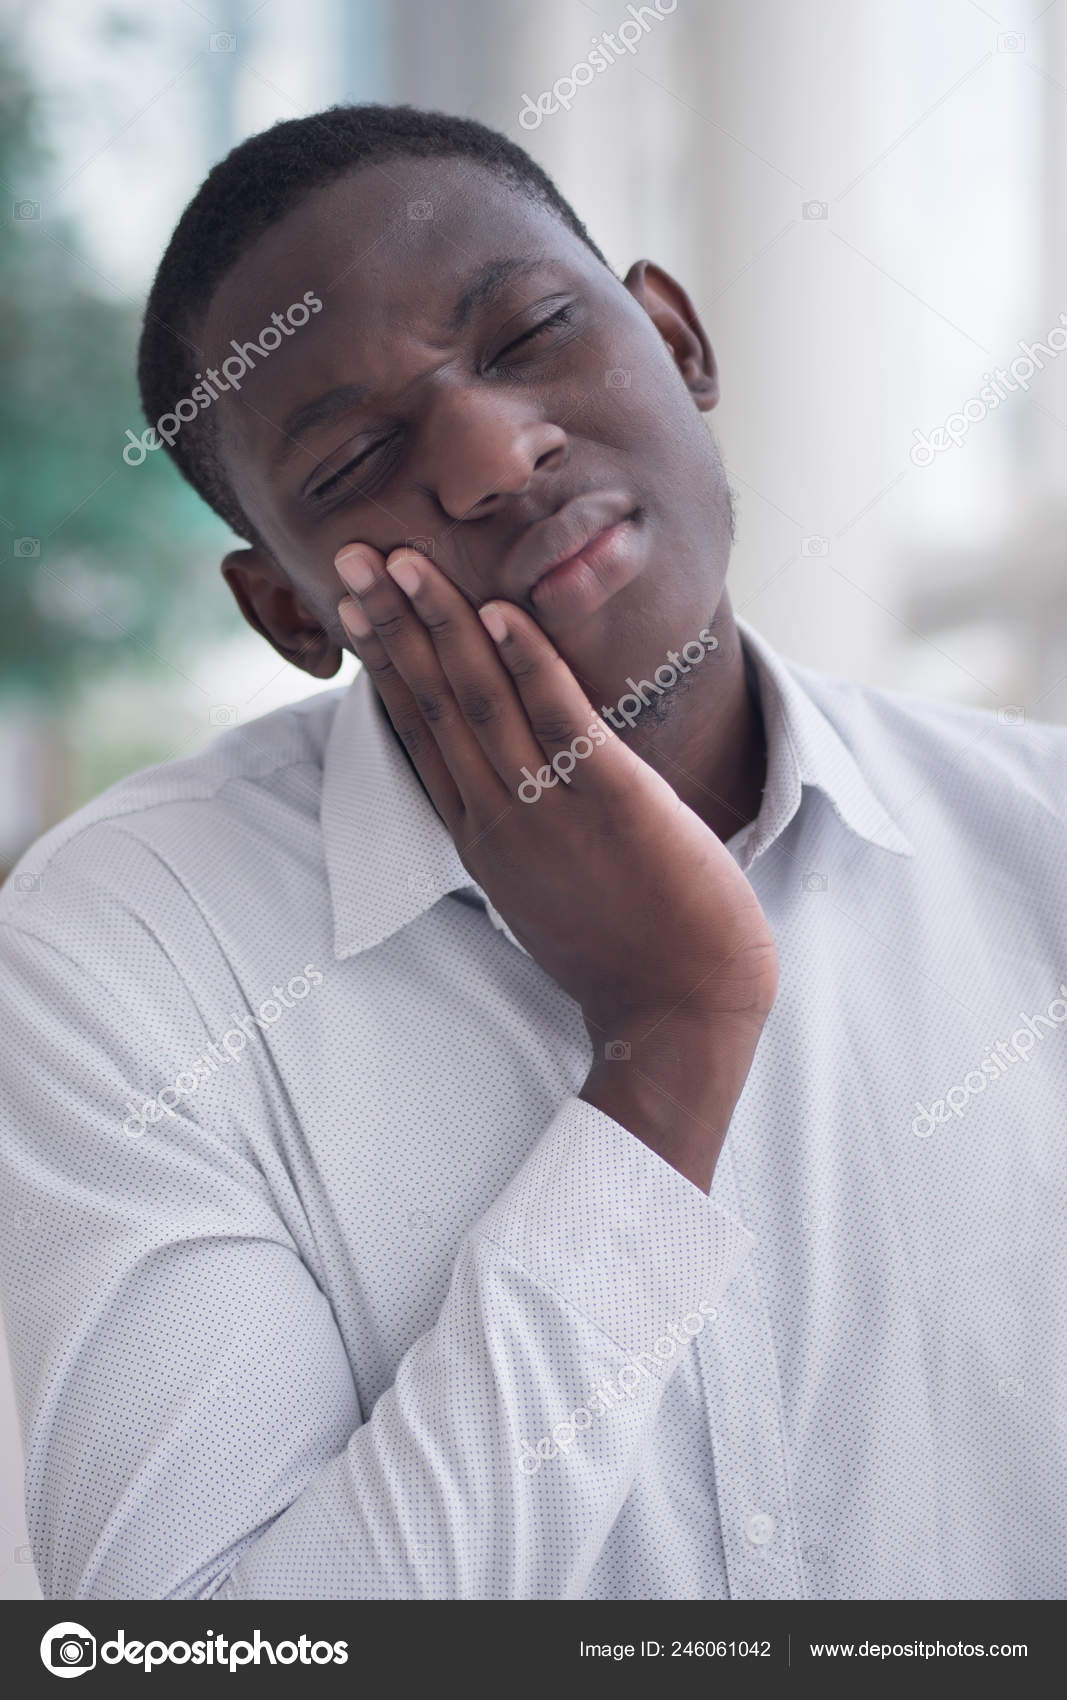 Retrato triste de um jovem africano pensando em preto e branco